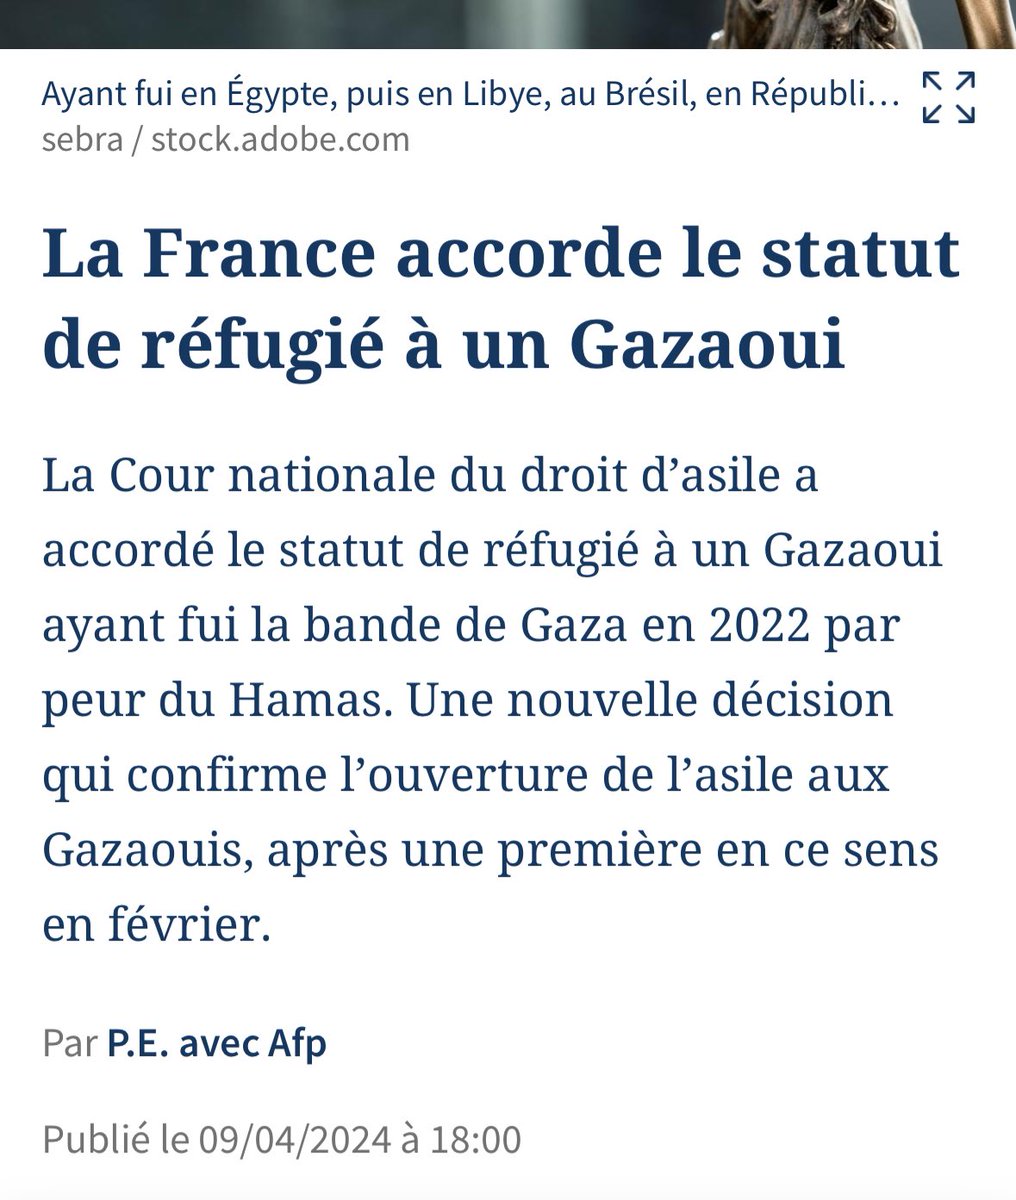 Un Gazaoui fuyant le #Hamas réfugié en #France. Les Palestiniens vivent sous une dictature islamiste depuis 2006. Mais bien entendu, les soit disant élus pro-palestiniens préfèrent parler d'#Israel. Ca rend d'avantage populaire que de critiquer les islamistes. #Gaza